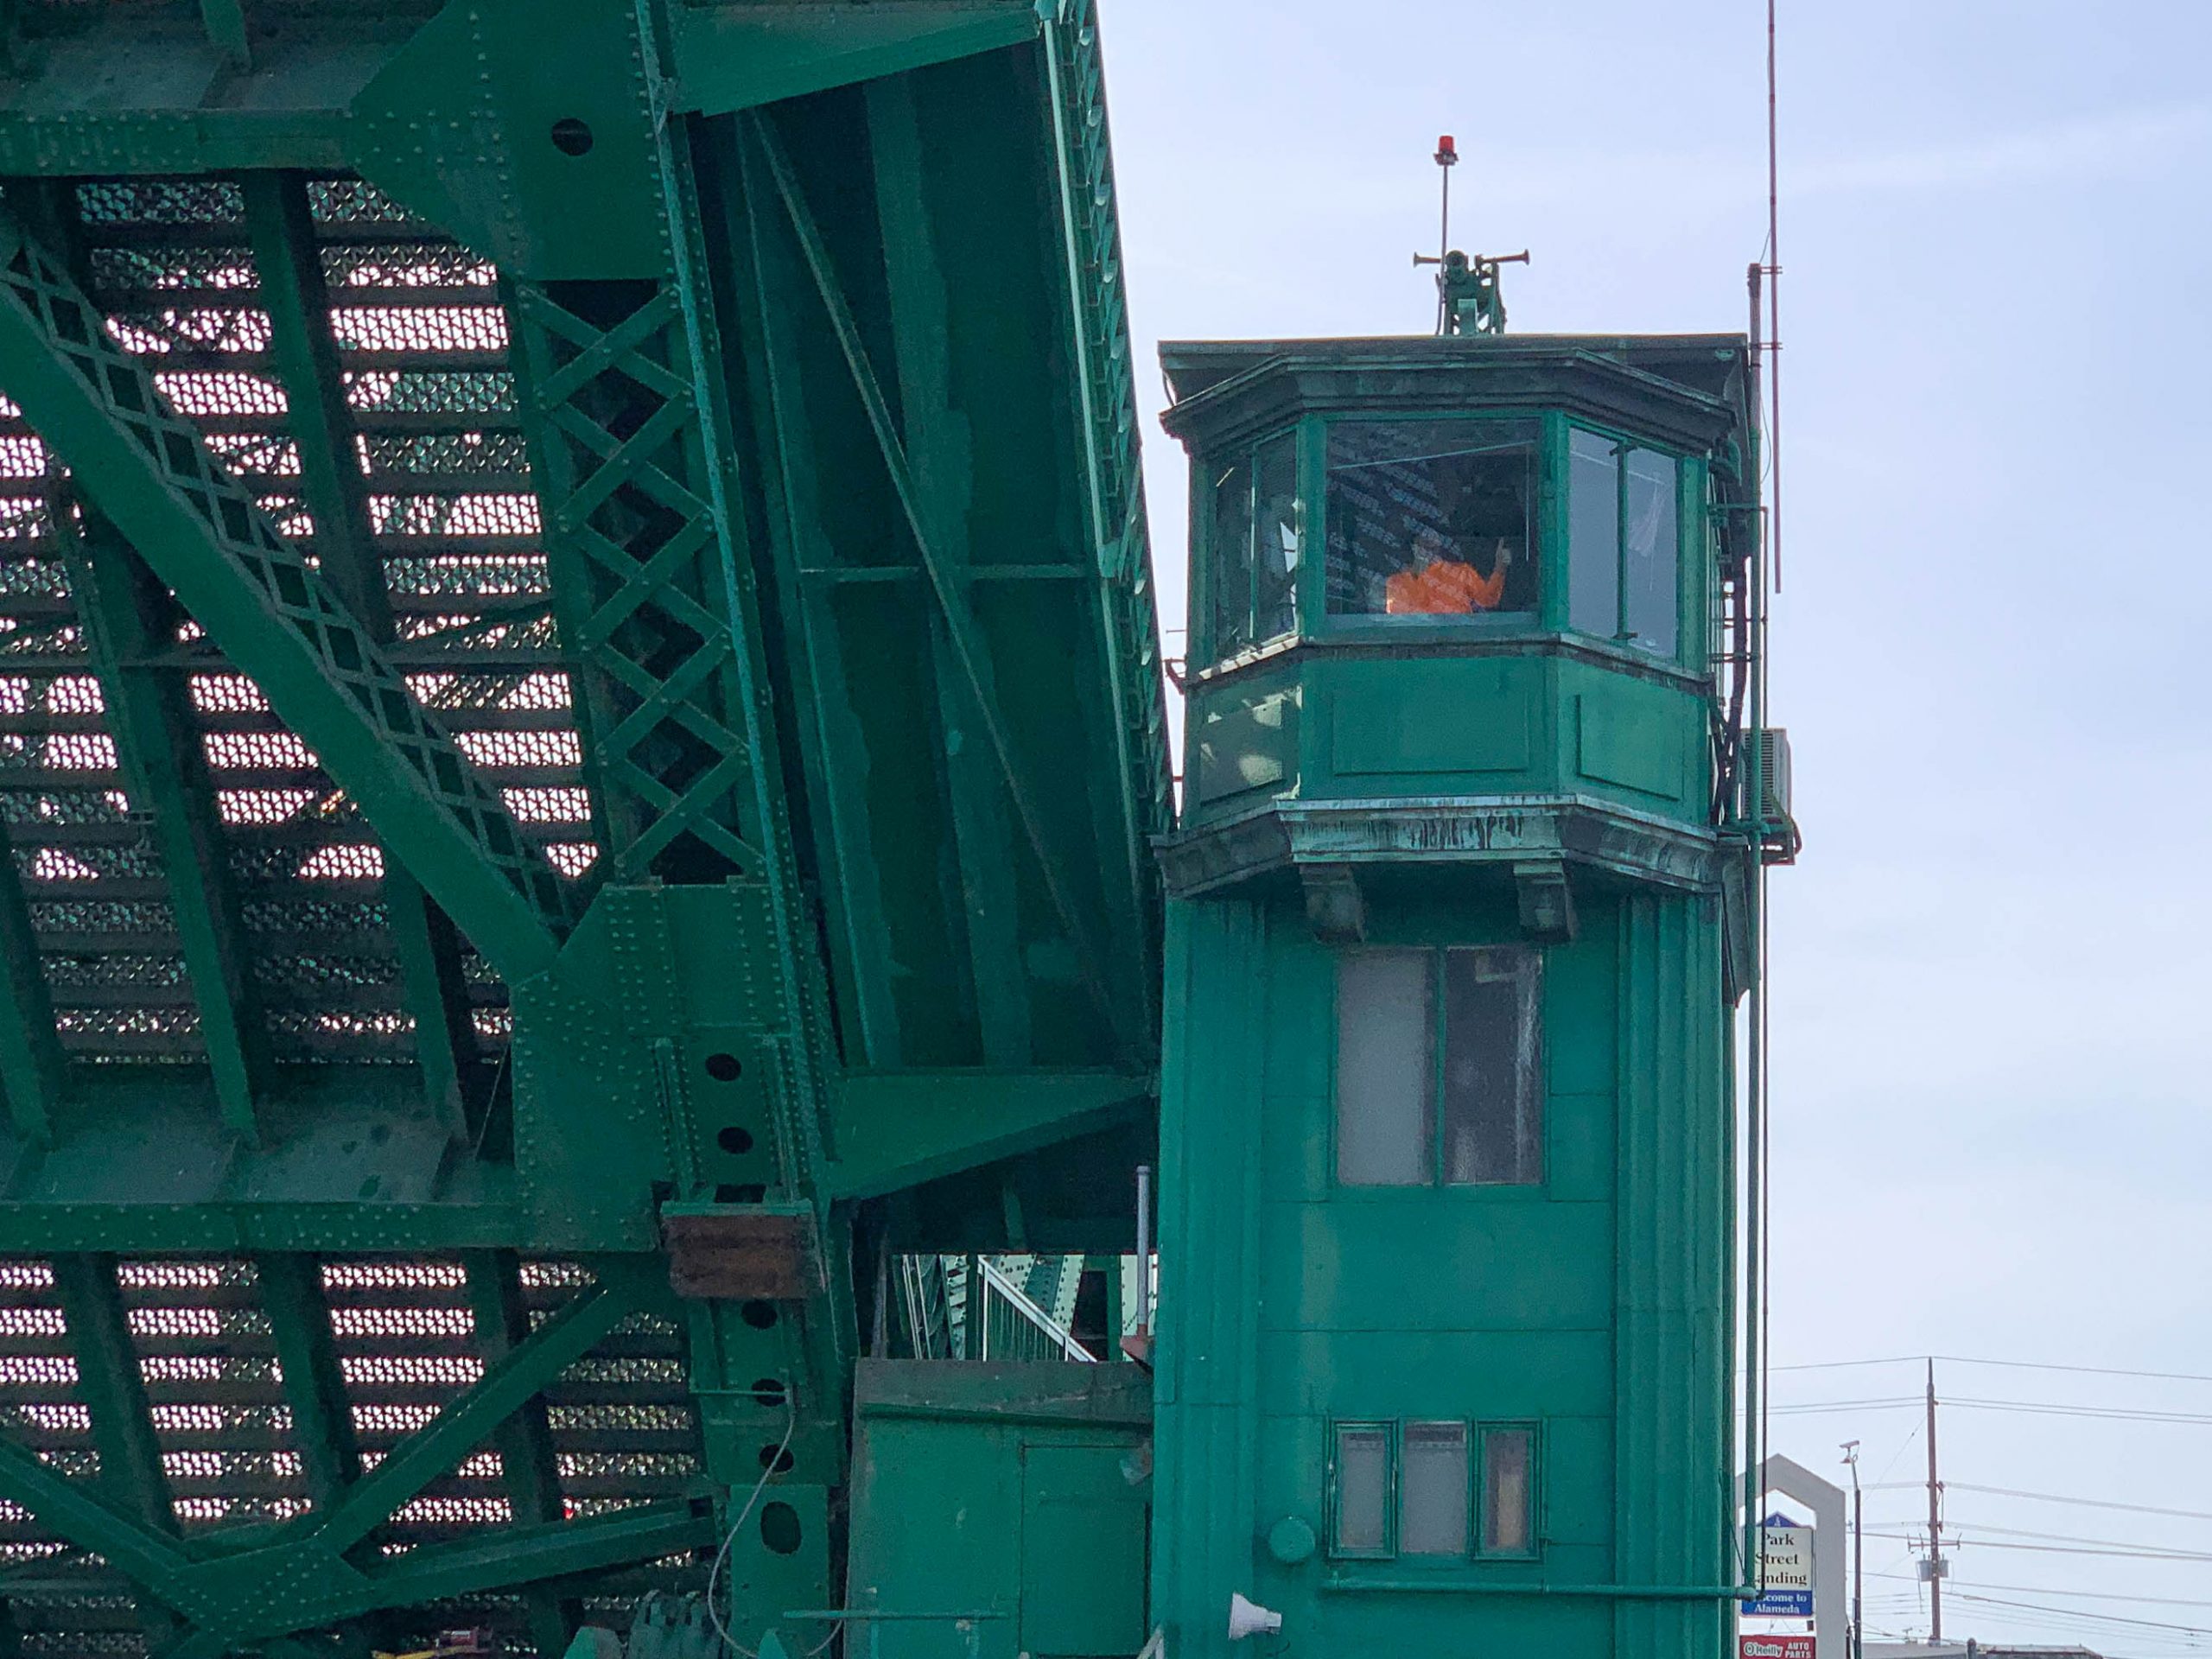 Bridge operator in control tower